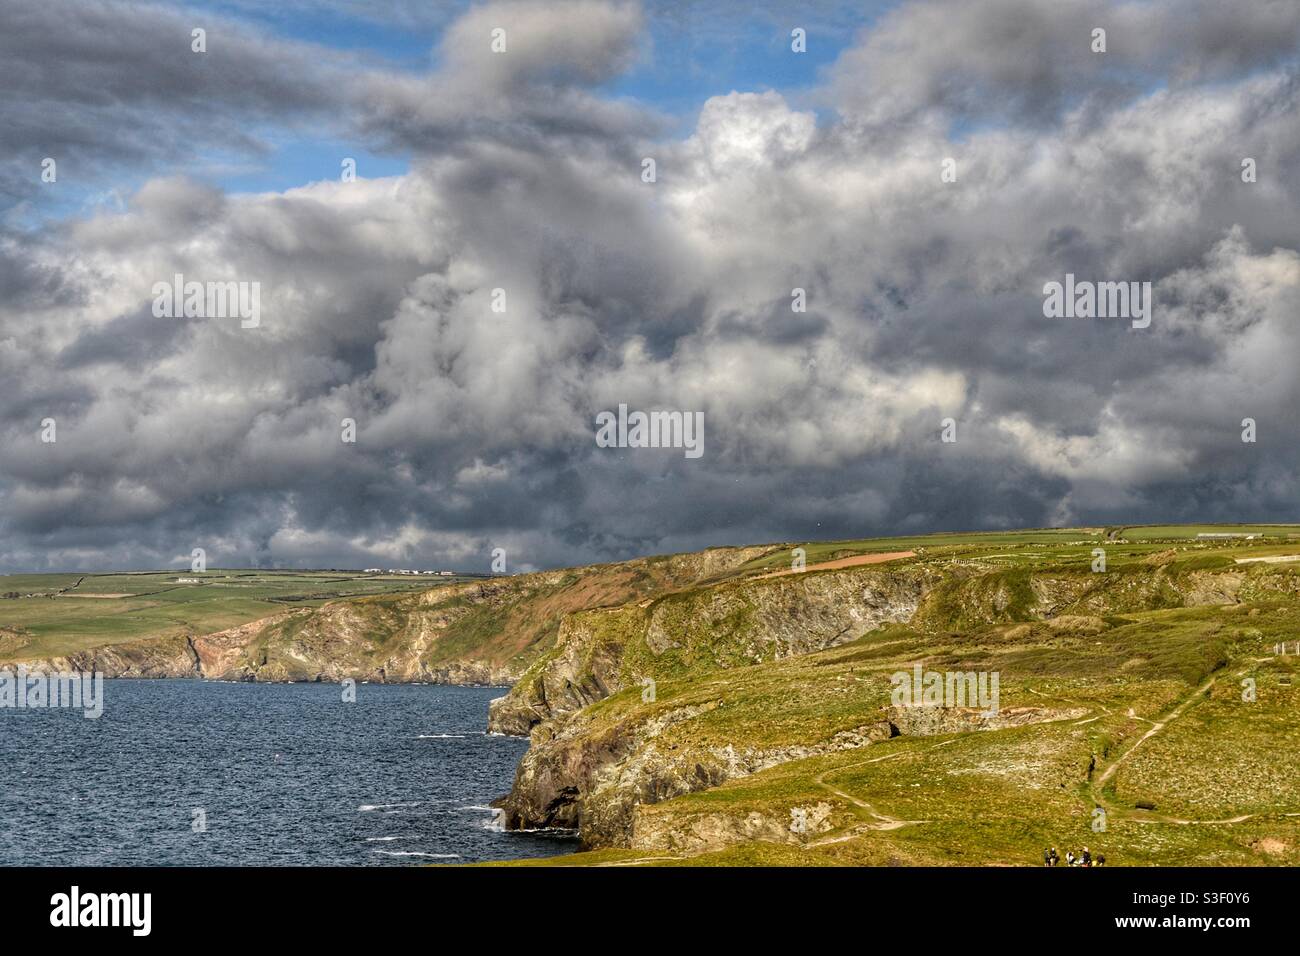 Cornwall coastline Stock Photo